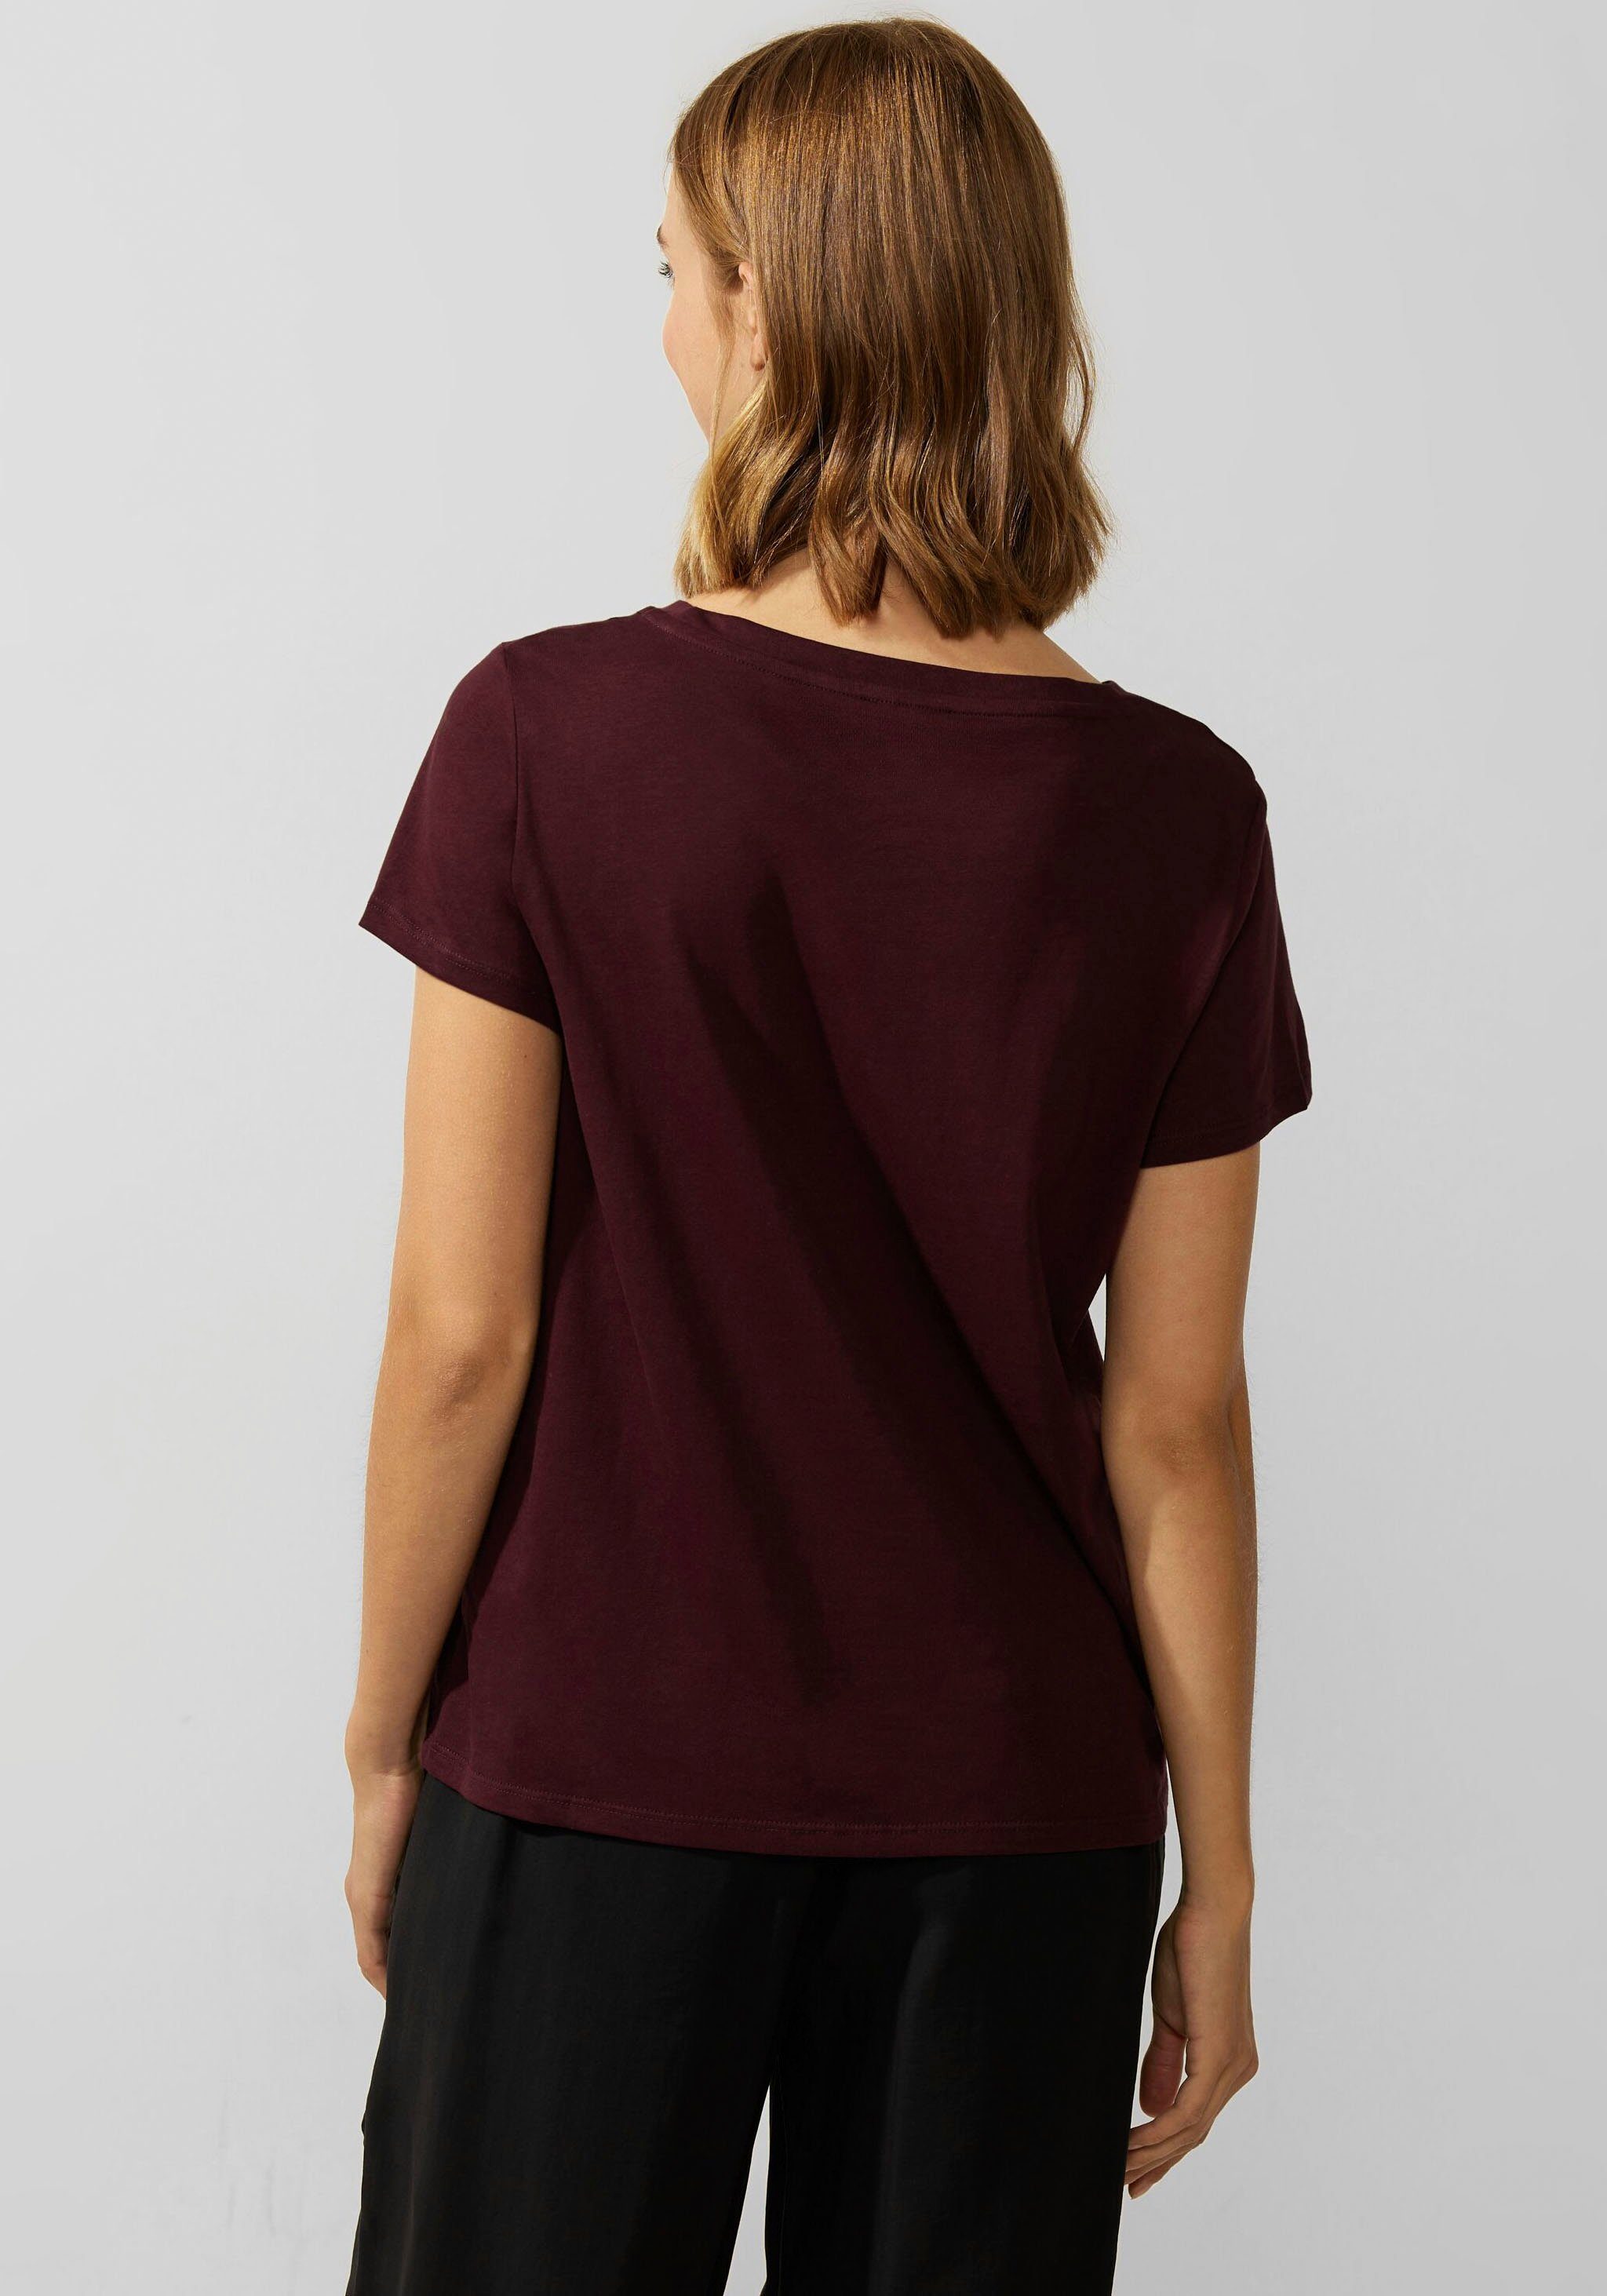 STREET ONE T-Shirt brown purple verlängertem mit Rückenteil